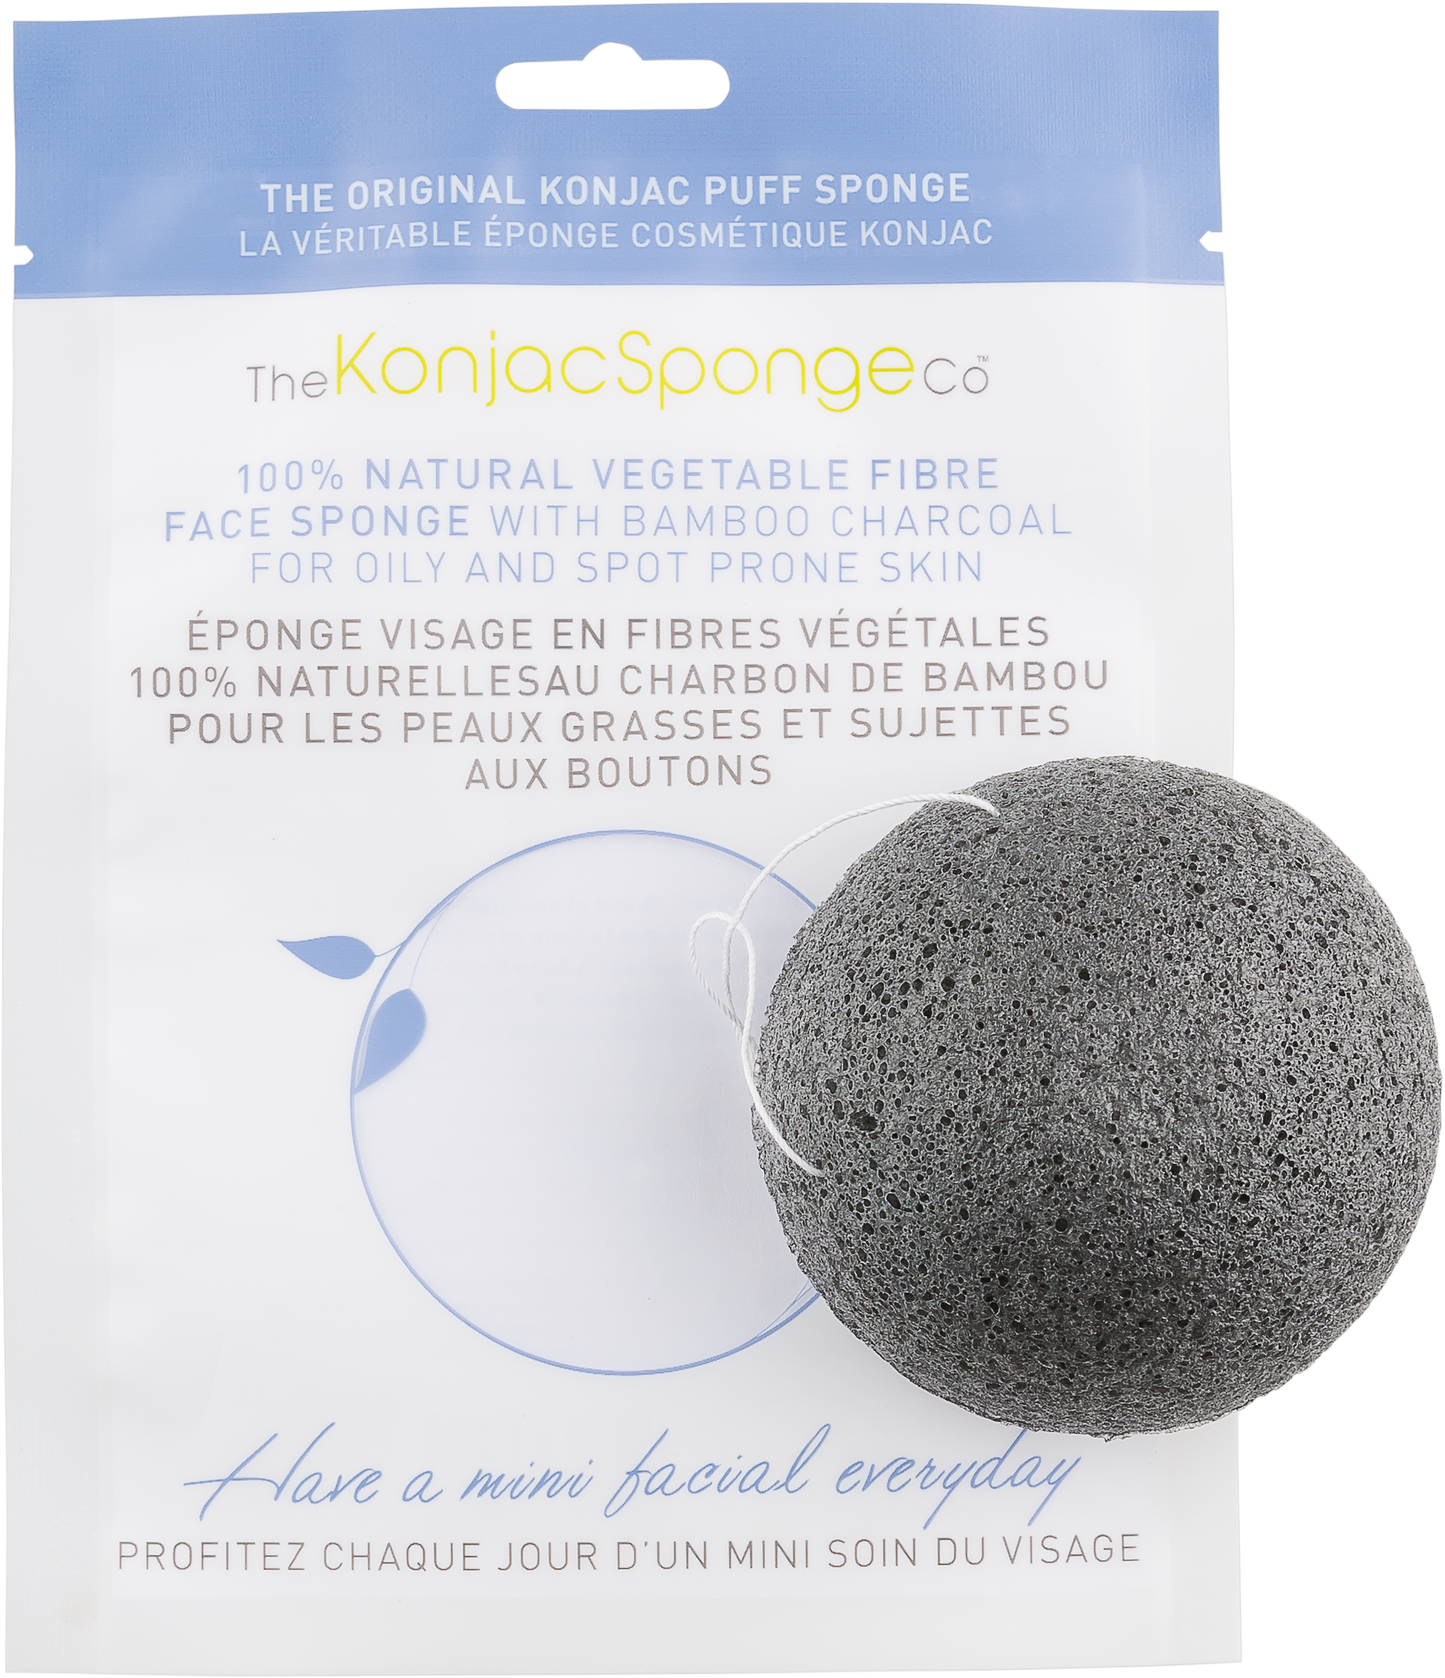 Konjac & Bamboo Charcoal Facial Sponge Puff - BiosenseClinic